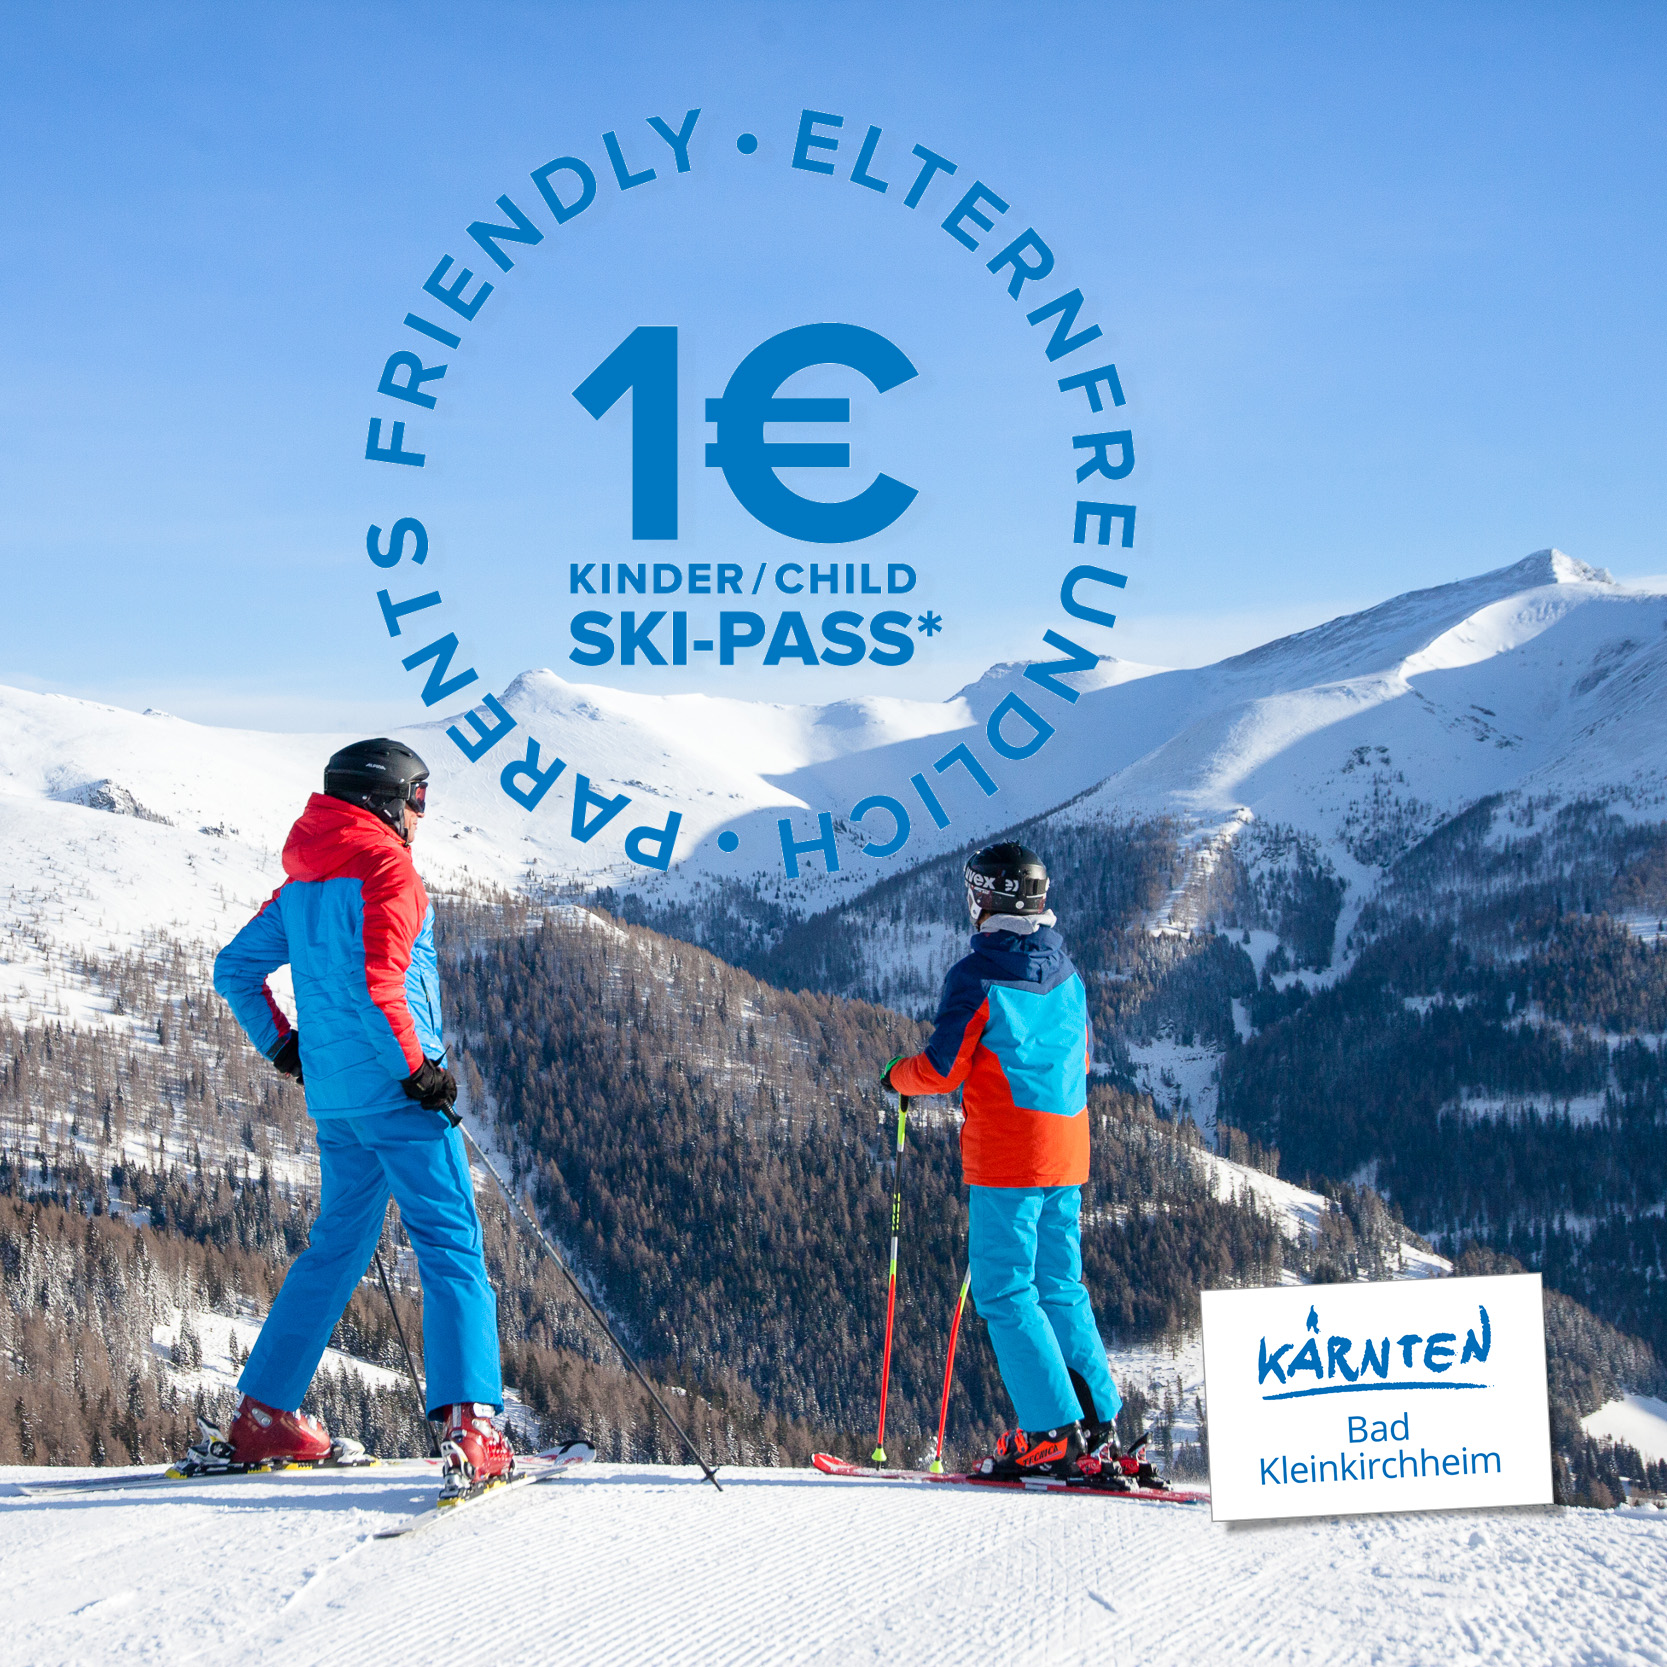 Oszczędności dla rodziców: karnet narciarski dla dzieci za 1 € w ośrodku Bad Kleinkirchheim. Zimowy urlop po słonecznej stronie Alp